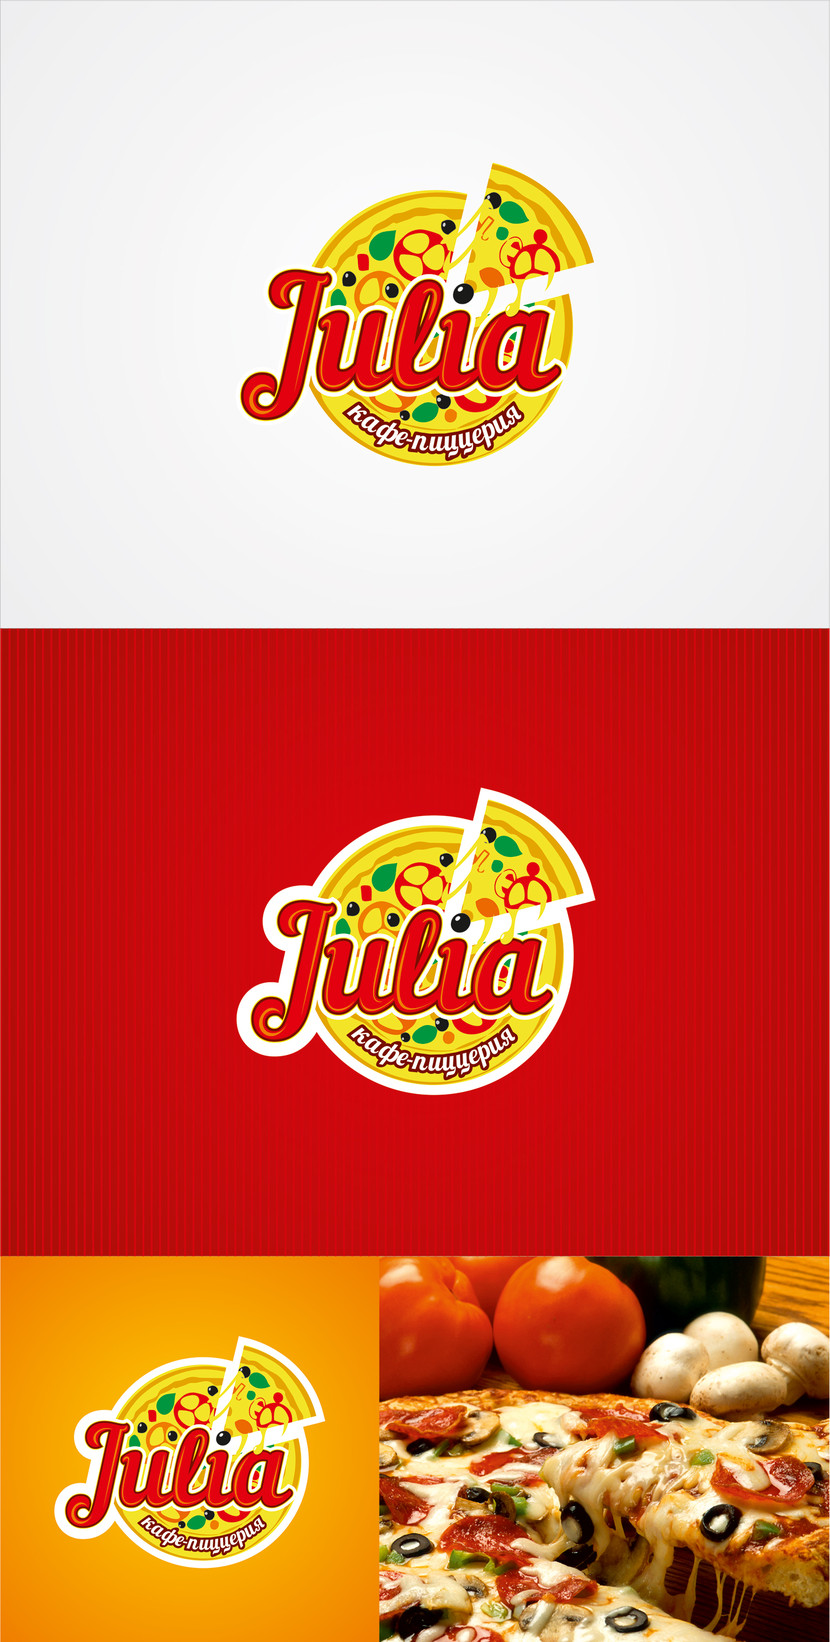 Логотип "Julia". 
Аппетитный логотип, по которому любой сразу поймет, что это пиццерия. Текстовая и знаковая часть логотипа органично вписаны друг в друга и уравновешены. Например, буква "i"  в слове завершается маслиной, которая находится на куске пиццы. 
За основу взять круг - пицца, из которого выглядывает кусочек пиццы и заглавная буква названия, тем самым мы ставим акцент на названии и в тоже время апеллируем к самому назначению заведения.
Цвета в логотипе используются радостные, природные, вызывающие аппетит. В целом логотип передает главное - самая вкусная пицца - Julia. - Логотип, фирменный стиль кафе-пиццерии "JULIA"